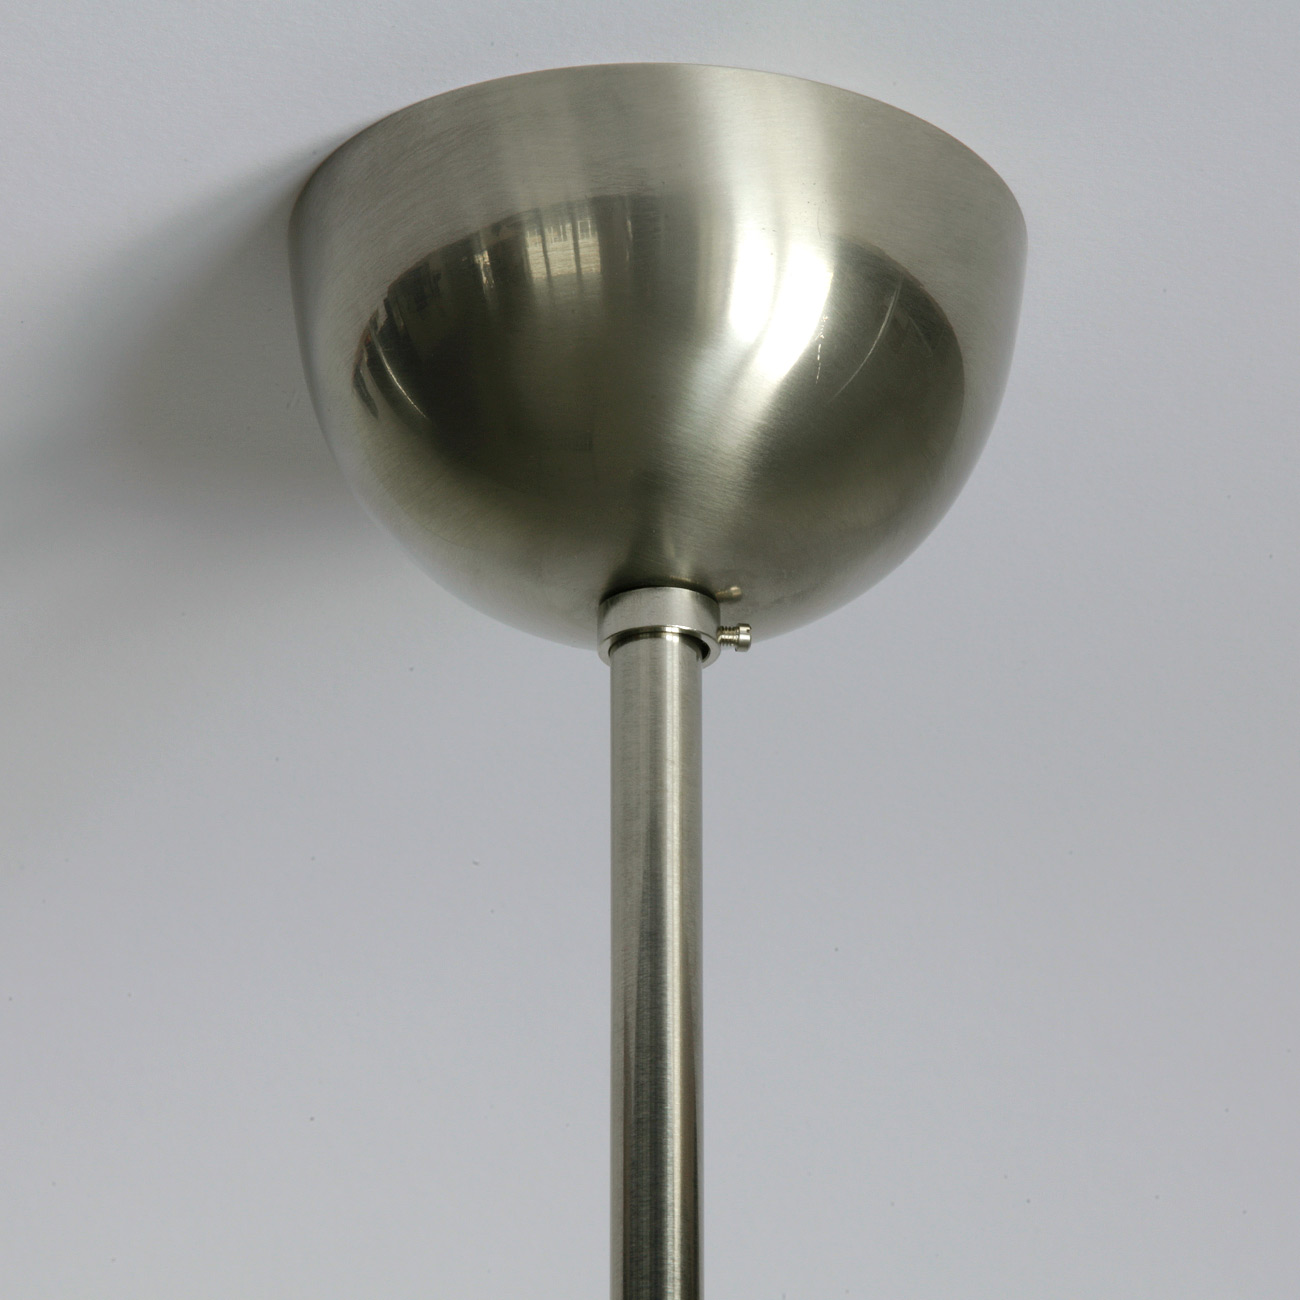 Rohr-Pendelleuchte mit spitzem Art déco-Opalglas: Baldachin in der Messing-Oberfläche „matt vernickelt“